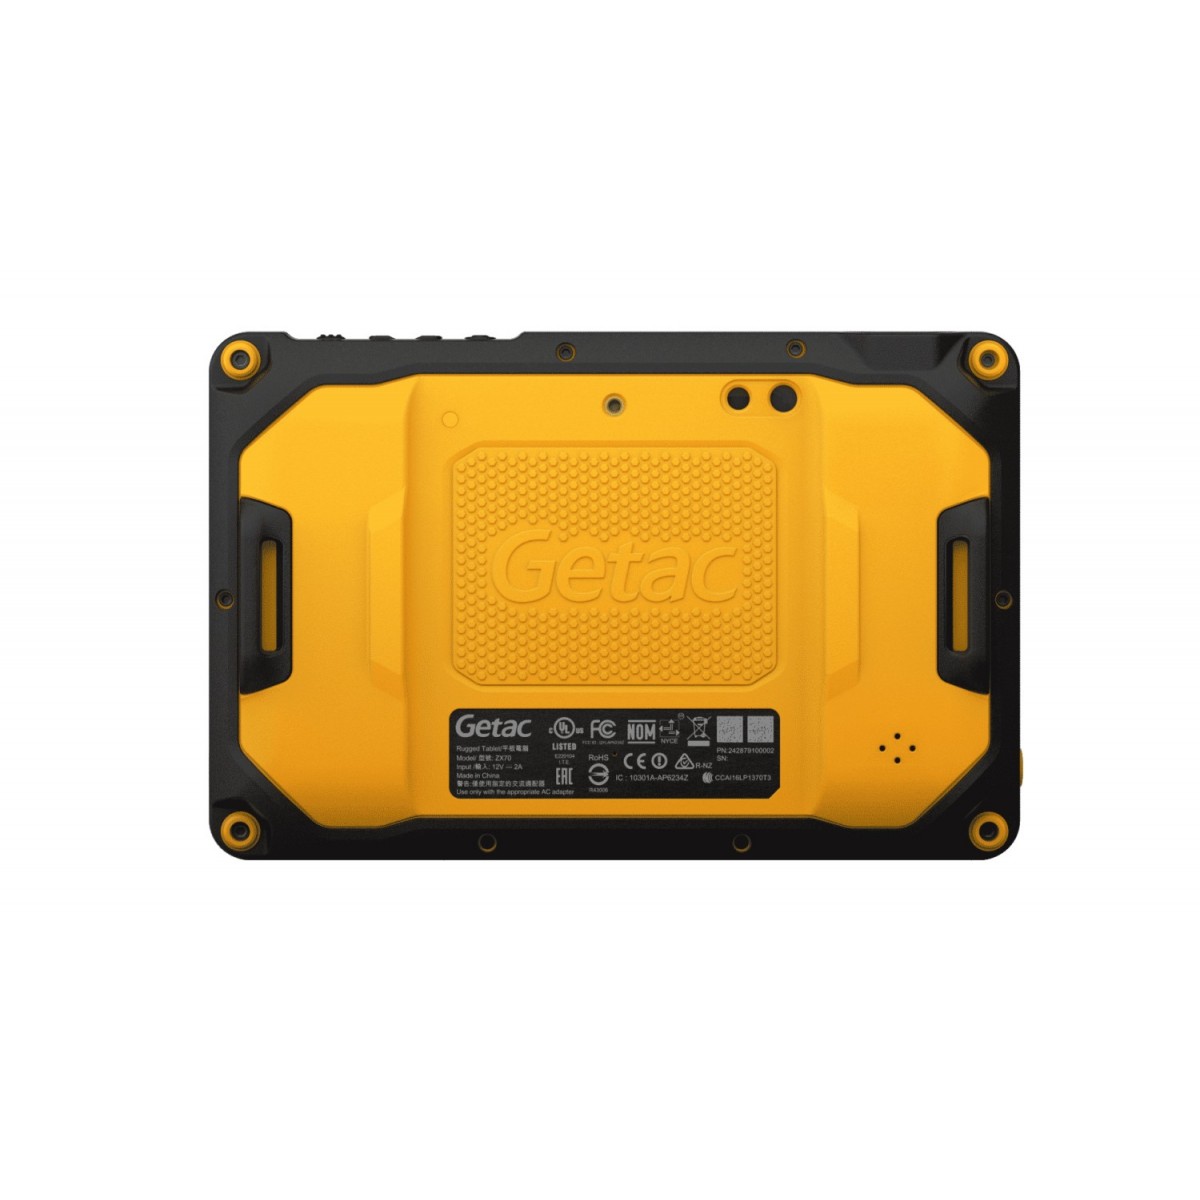 GETAC ZX70 G2-Ex QS 660 W/8MP CAM - Tablet - 1.9 GHz